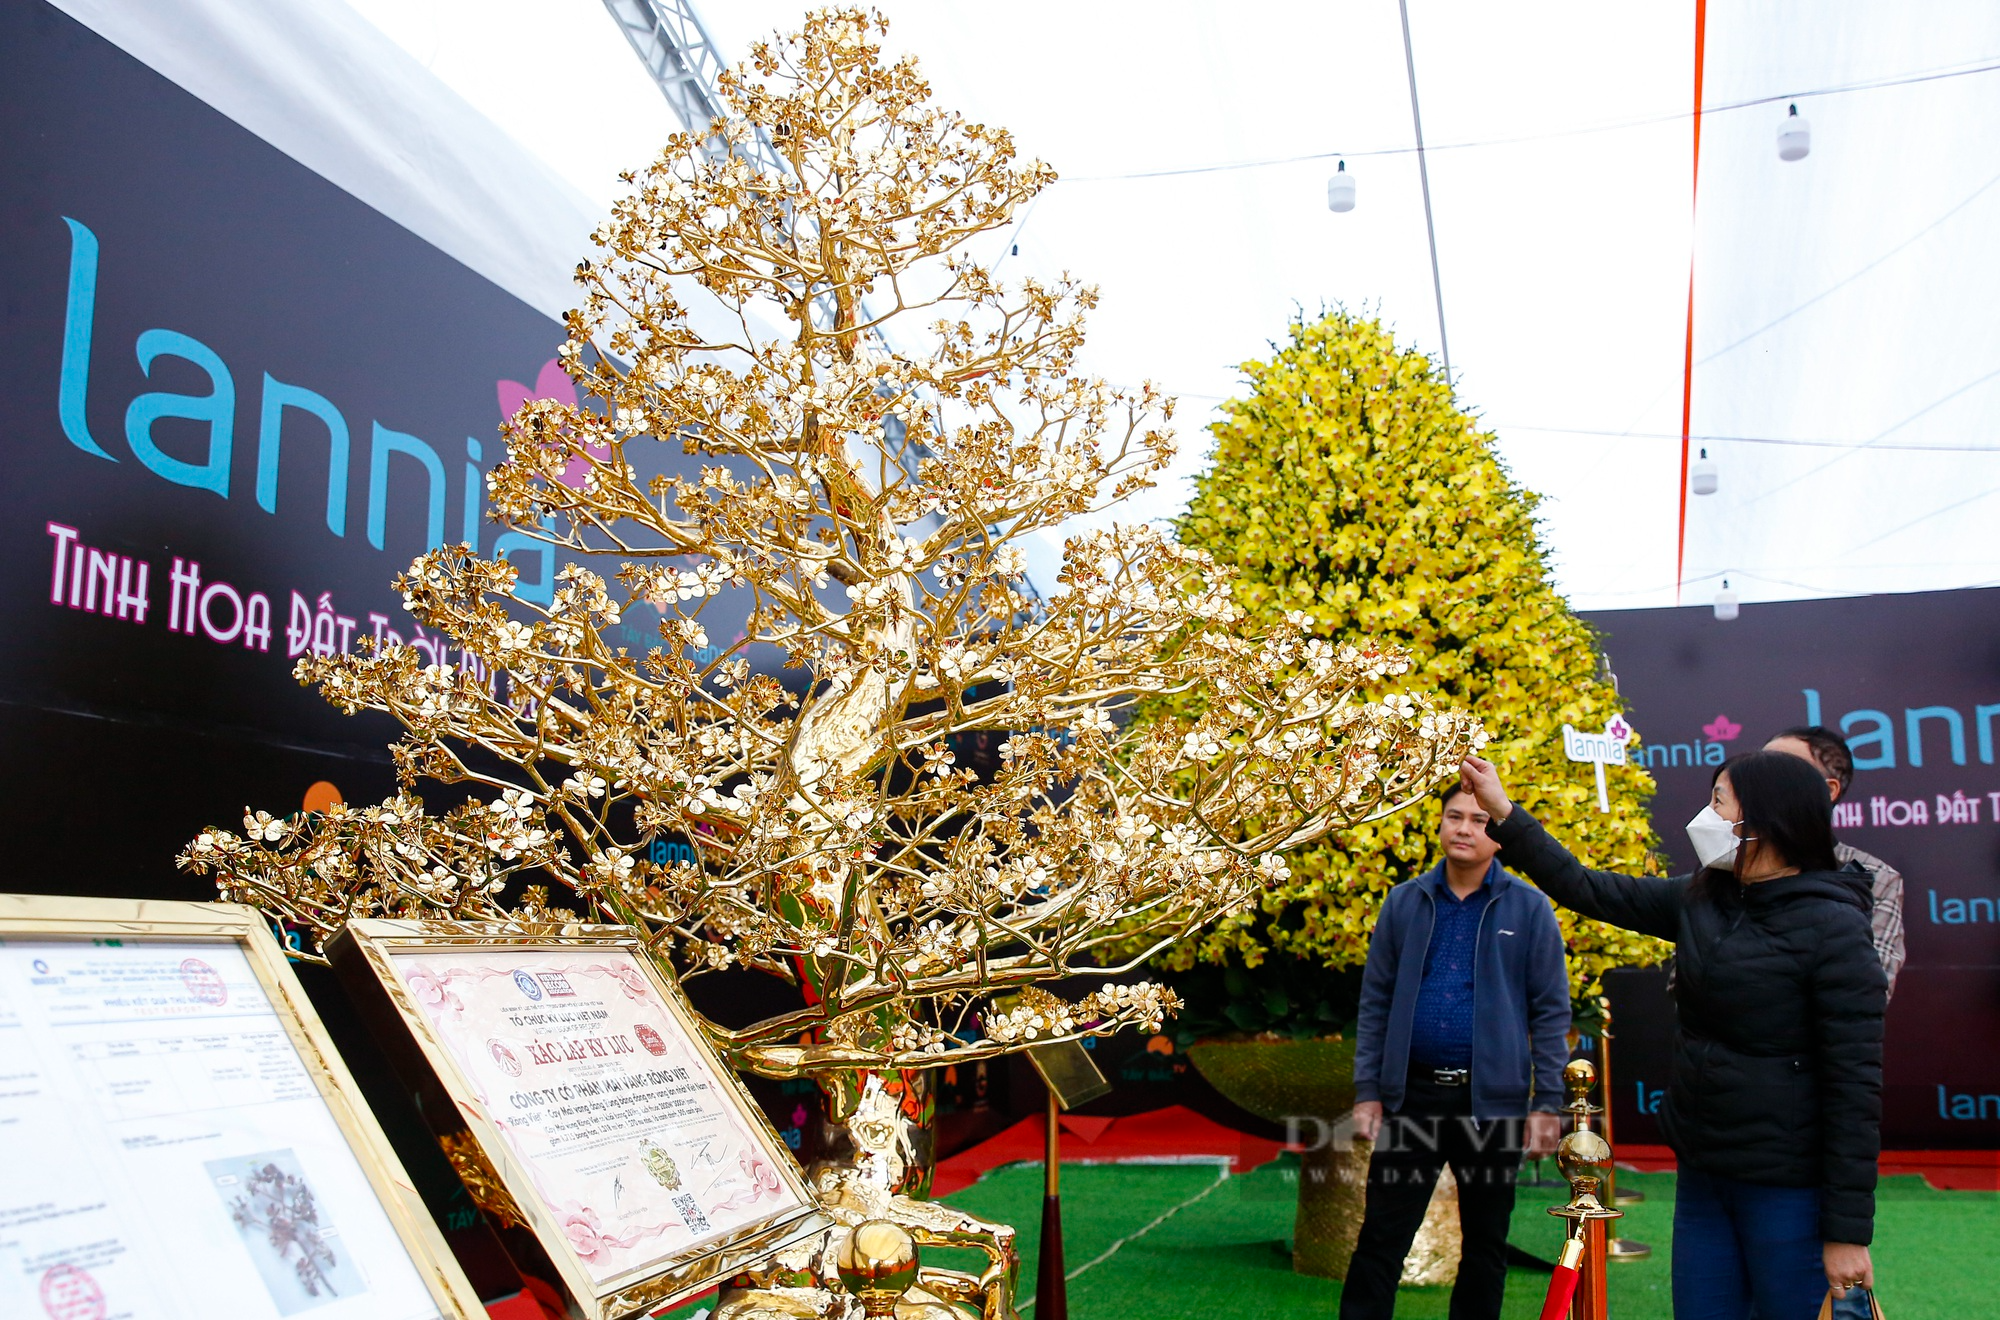 Ngắm cây mai mạ vàng 24k lớn nhất Việt Nam được chào bán 5,5 tỷ đồng tại Hà Nội - Ảnh 9.